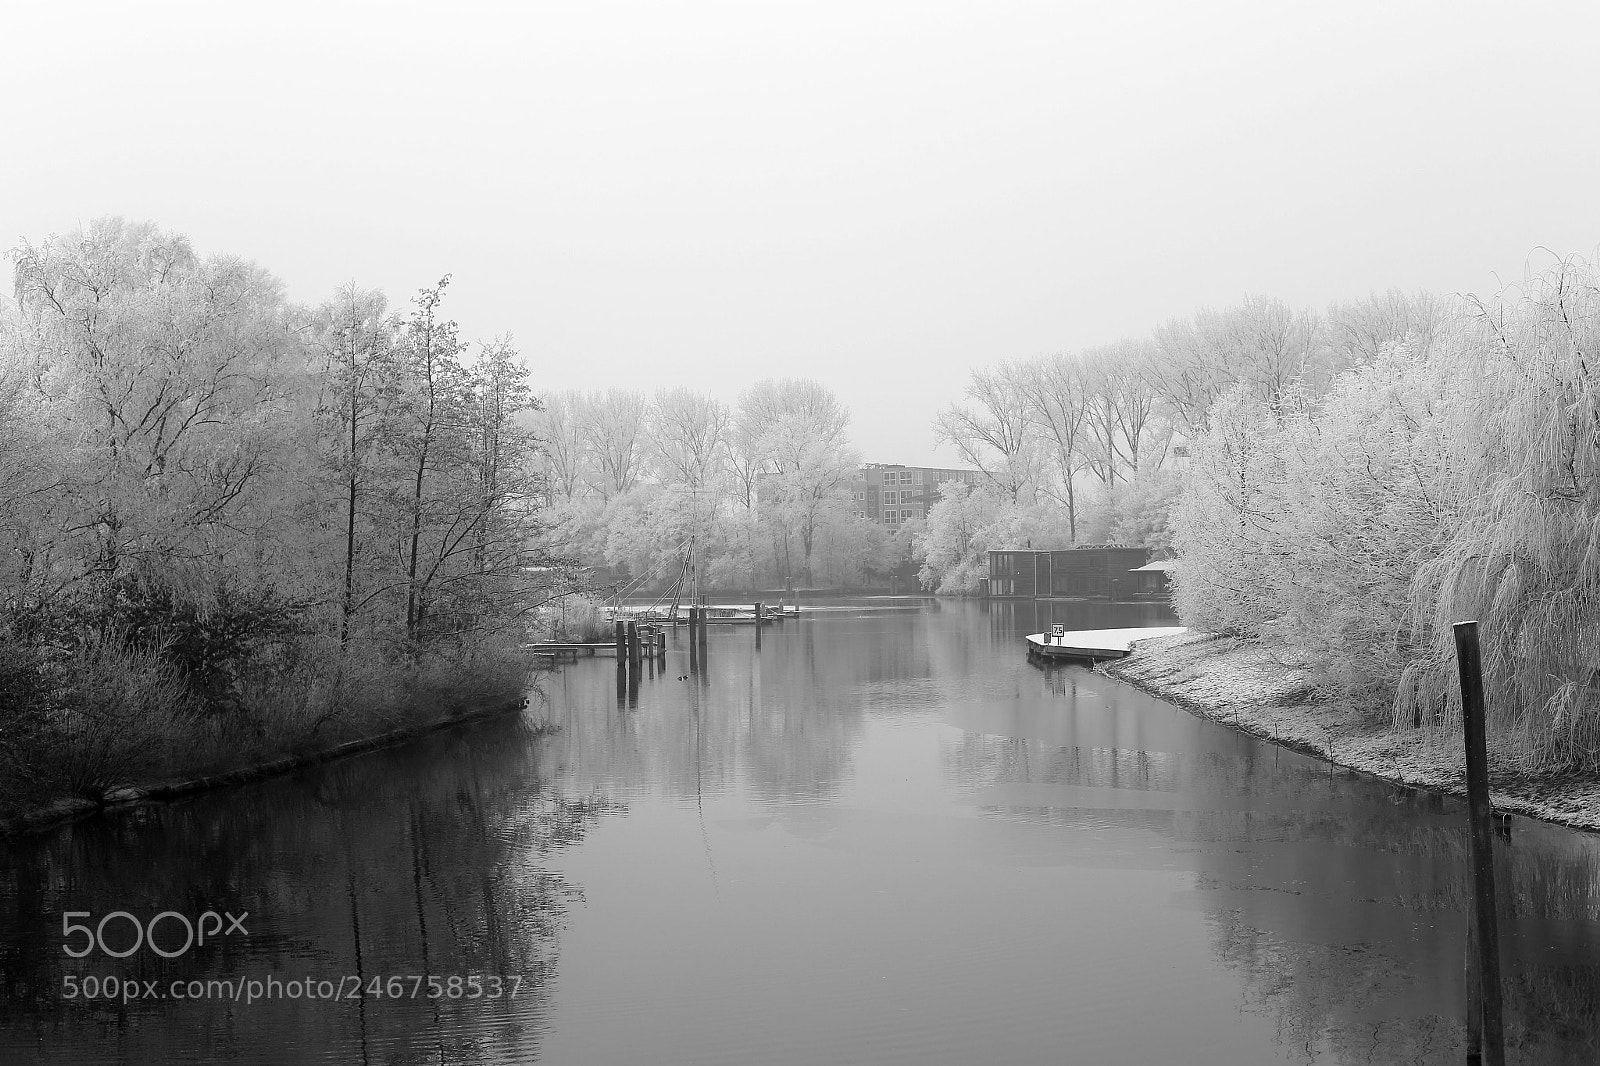 Canon EOS 6D sample photo. Winter calm photography